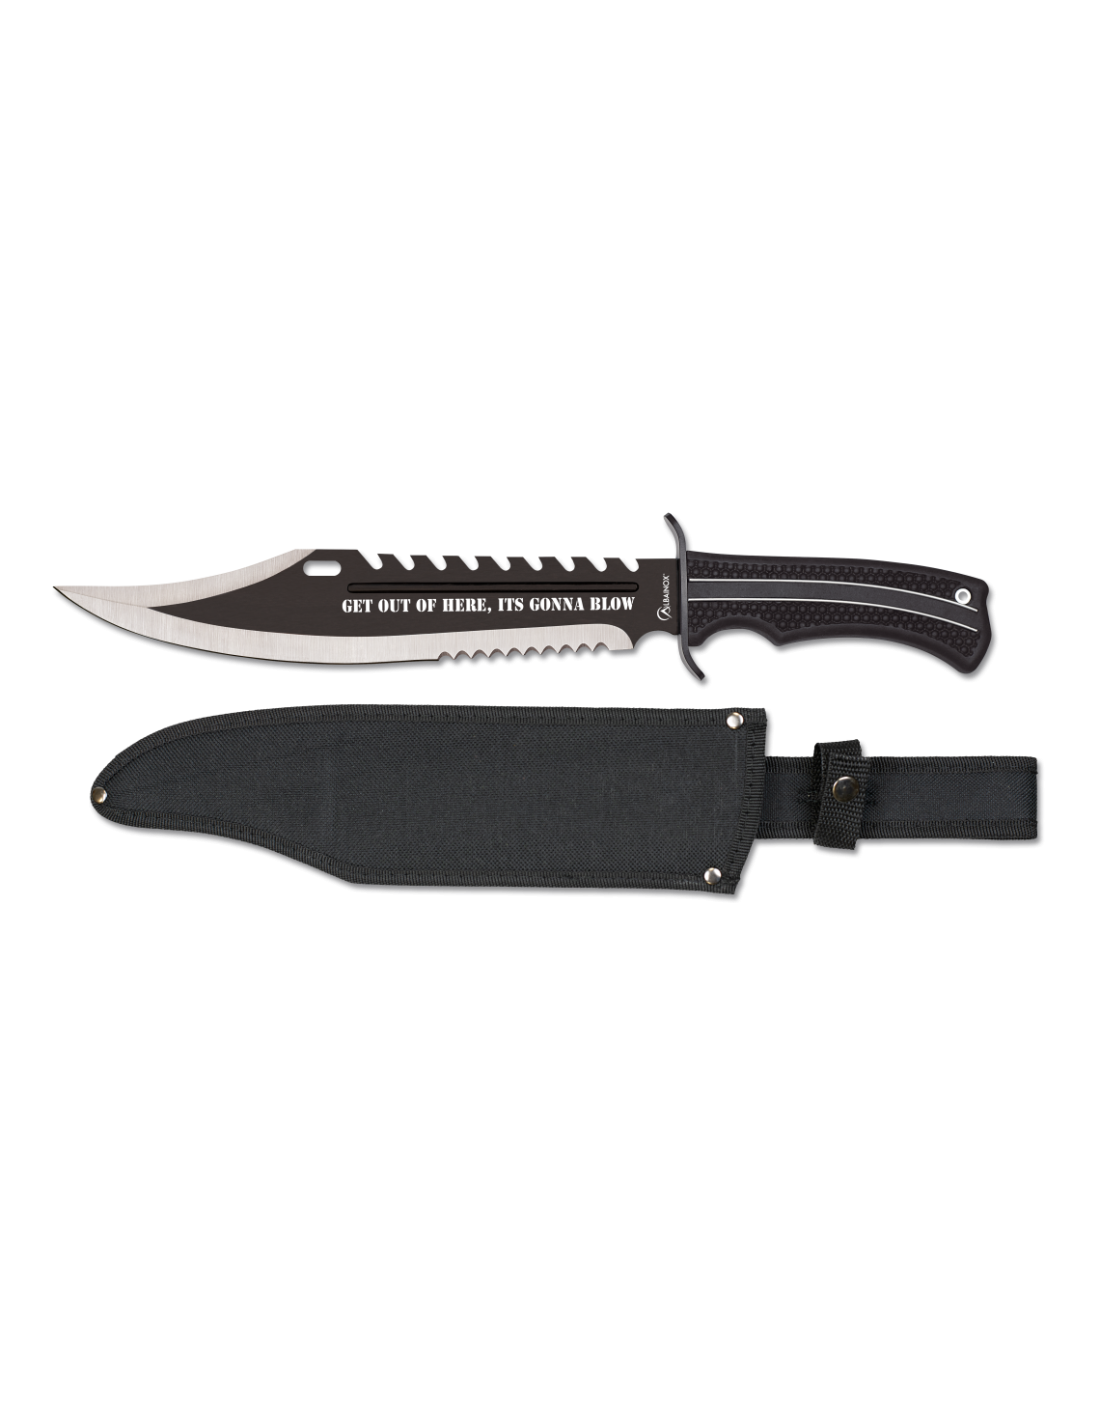 Cuchillo supervivencia ALBAINOX 29 cm